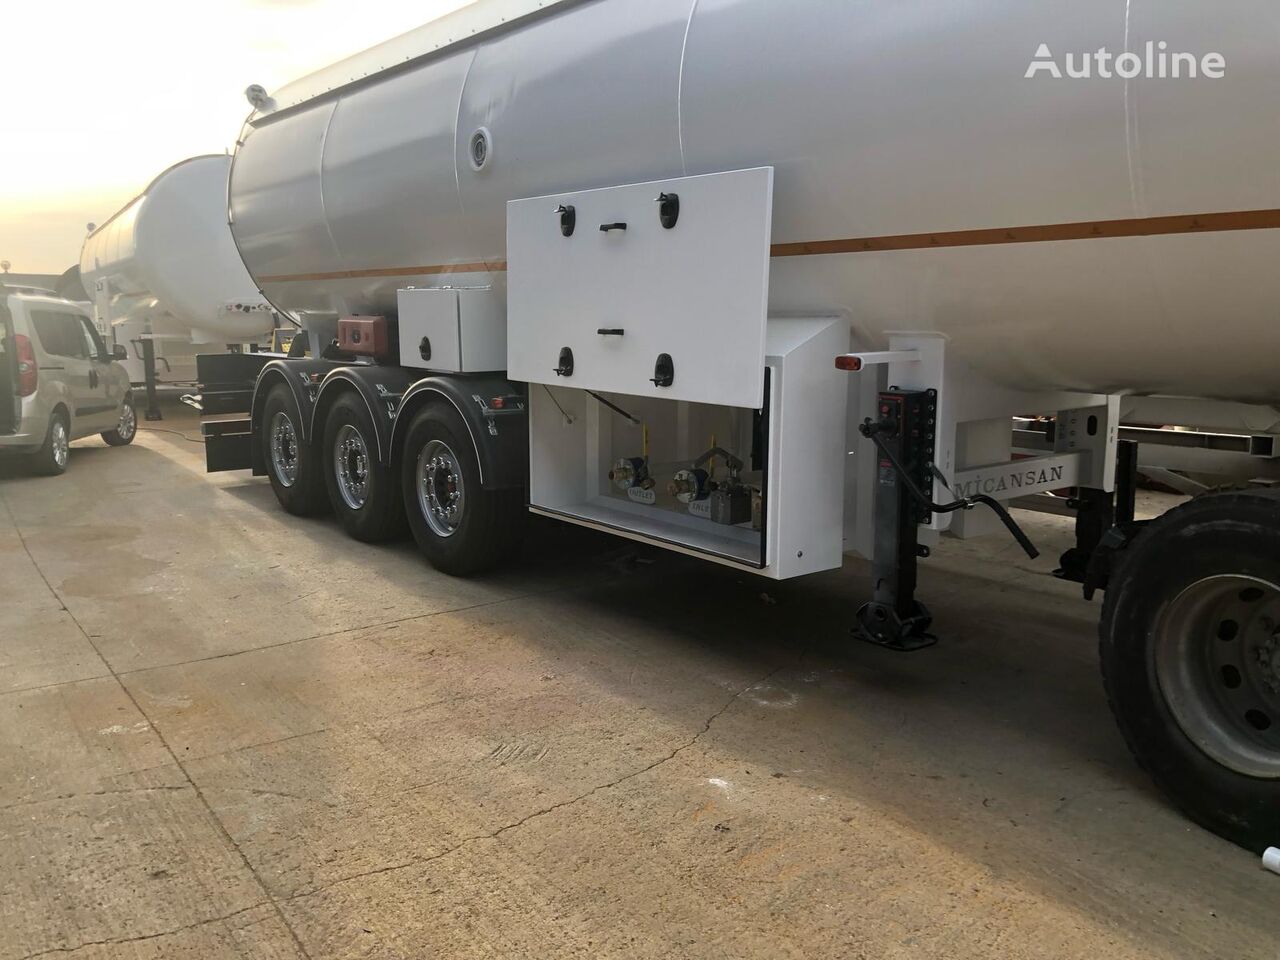 новая газовая цистерна Micansan READY FOR SHIPMENT 45 M3 LPG GAS TANKER SEMITRAIL